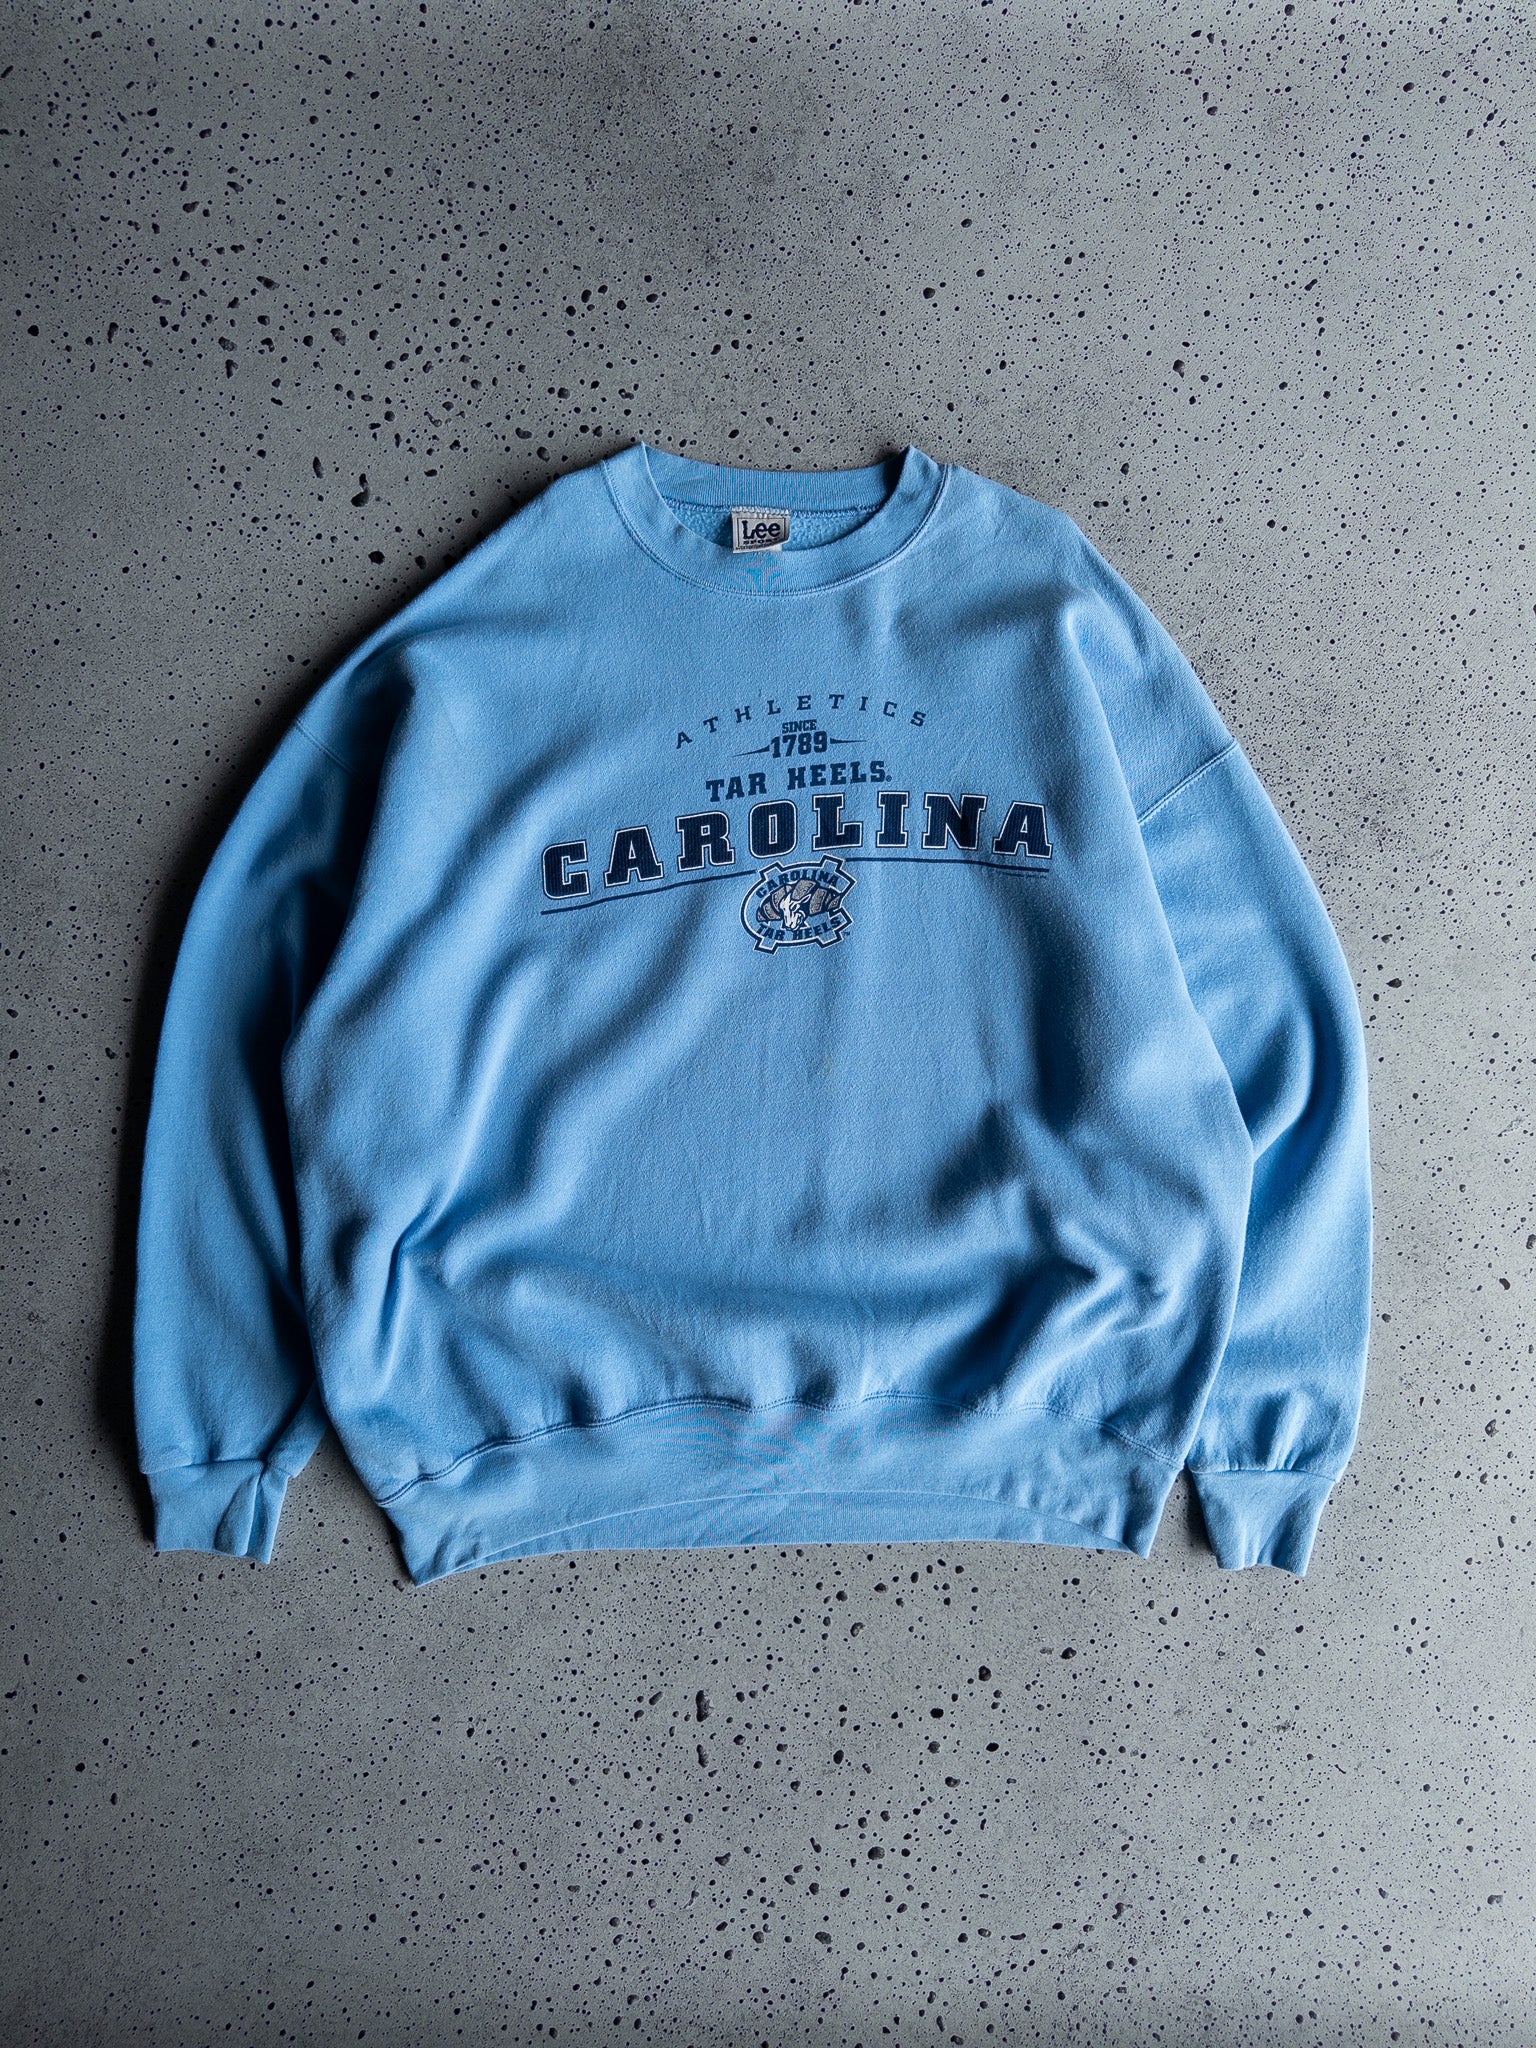 Vintage North Carolina Tar Heels Sweatshirt (XXL)